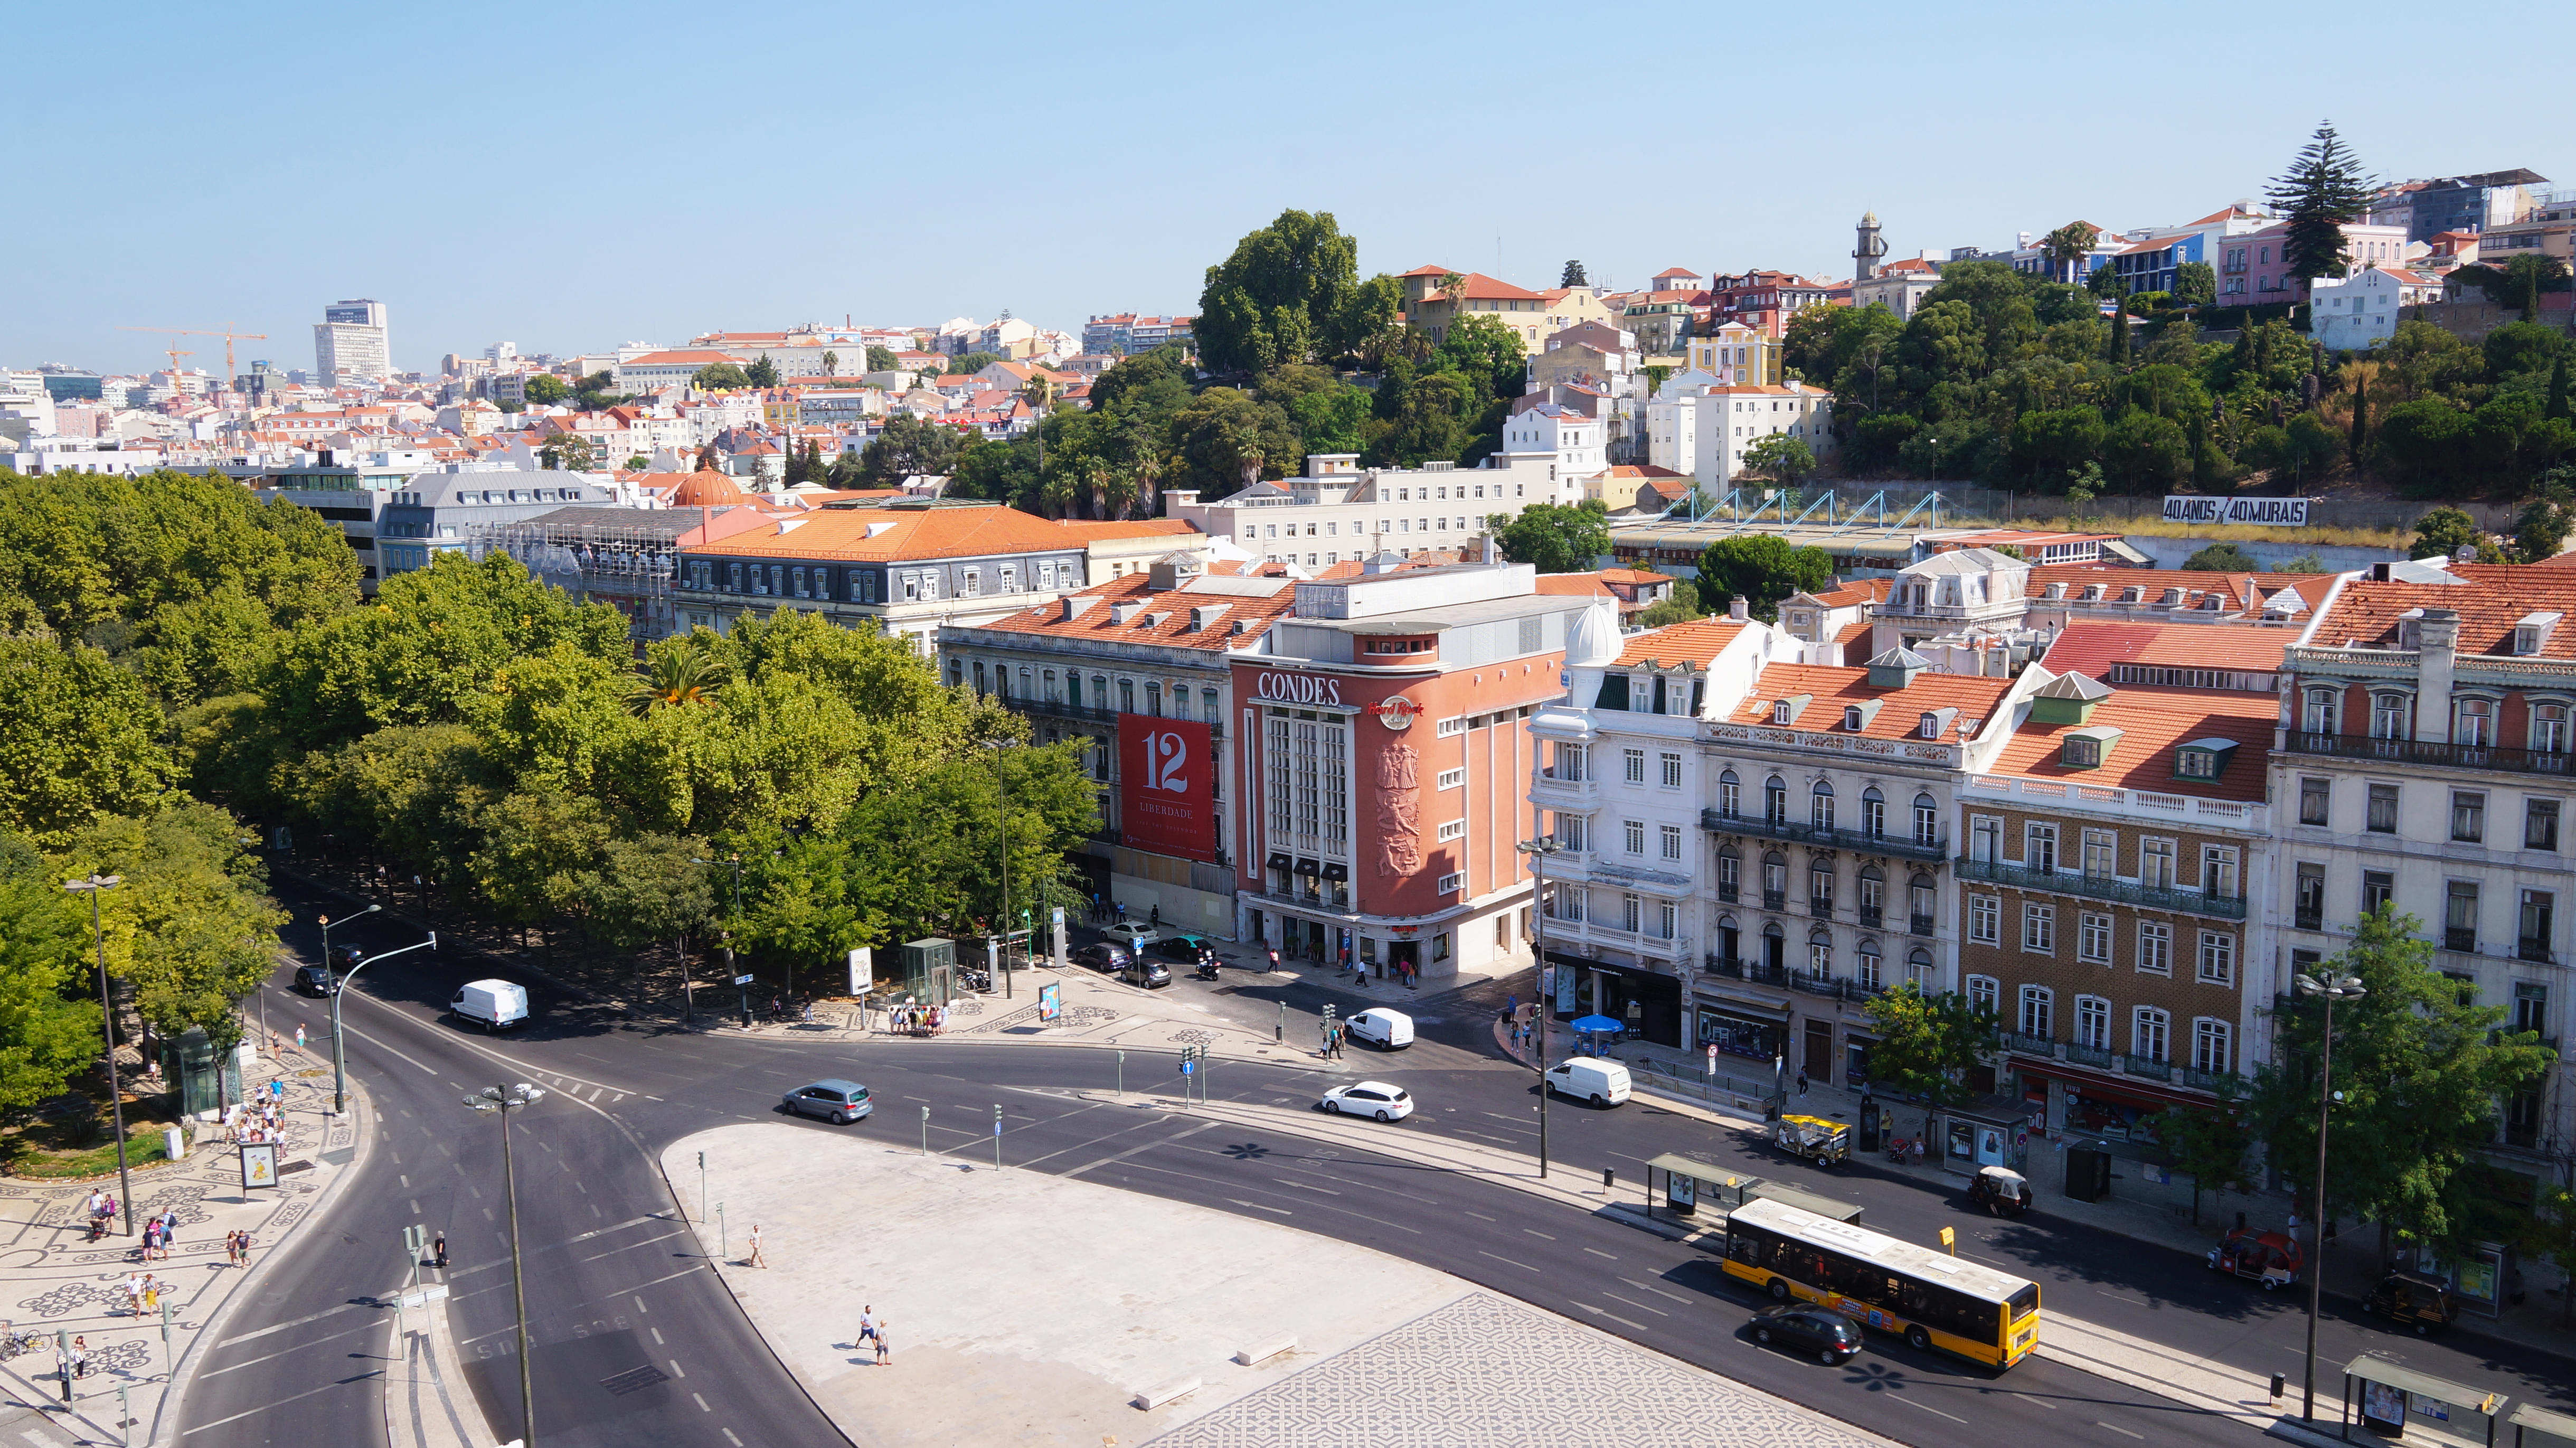 Restauradores Square, Lisbon